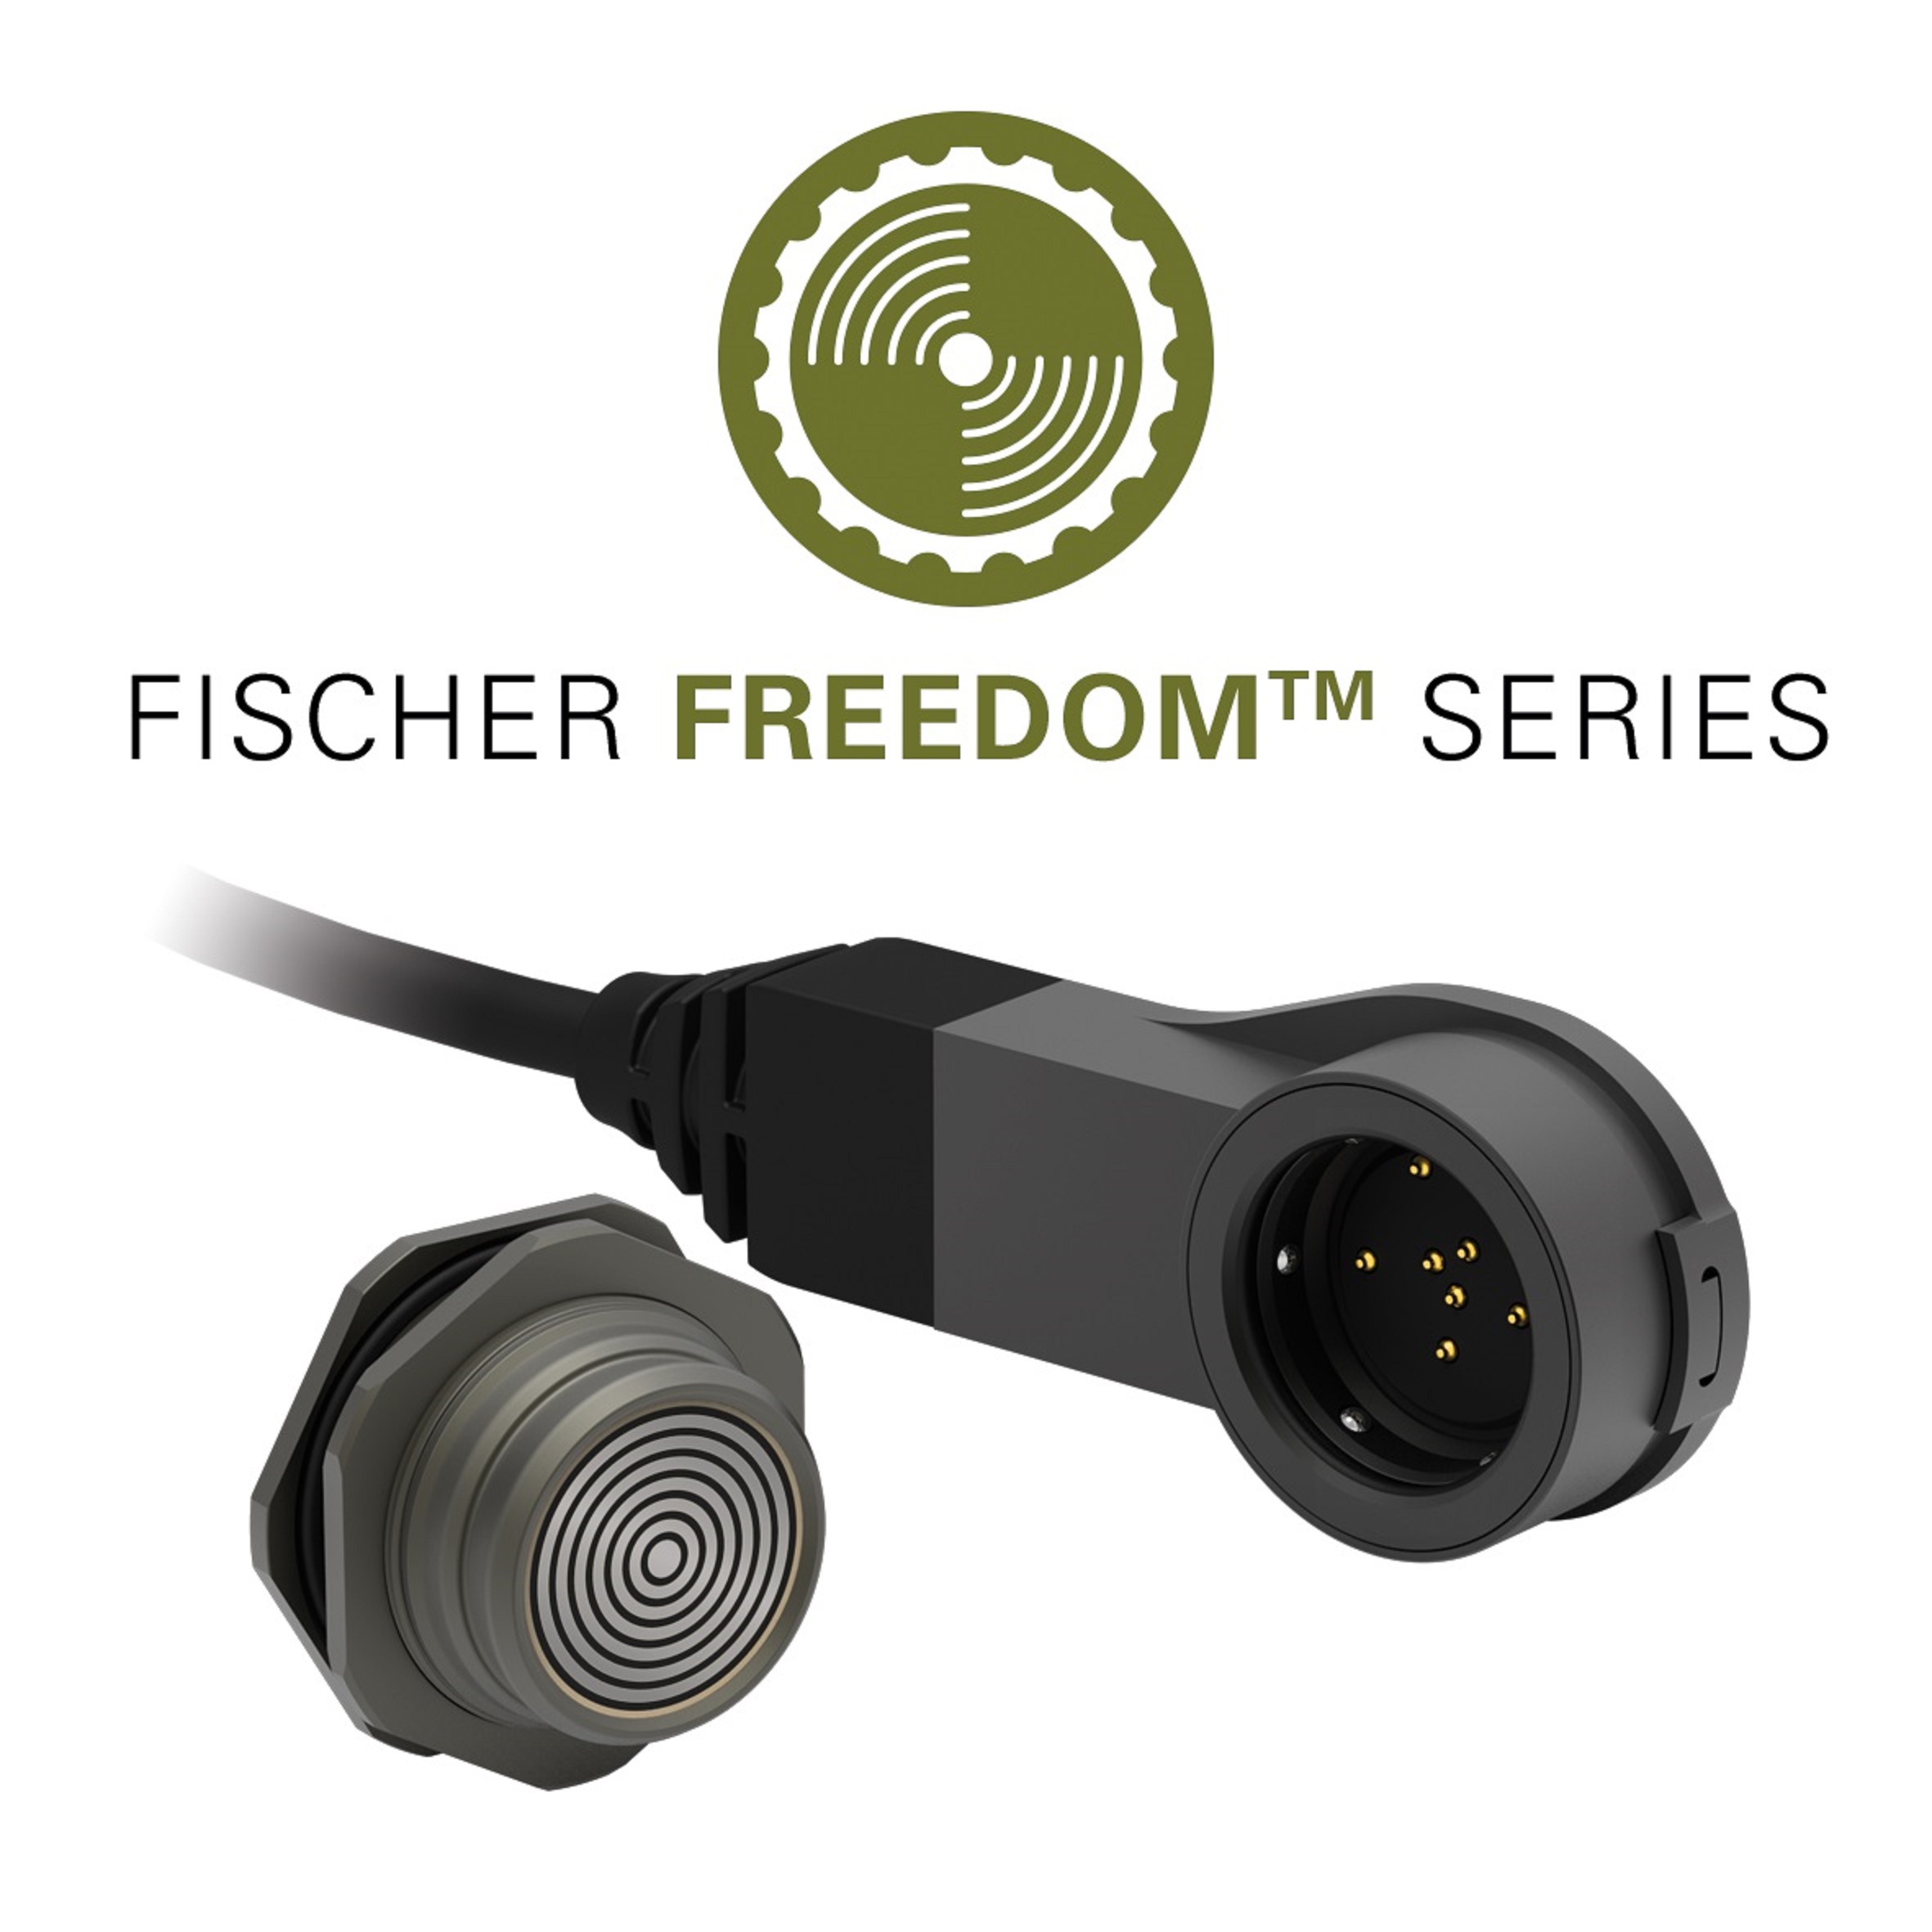 Nuevo conector Fischer LP360TM: novedad tecnológica por la conectividad